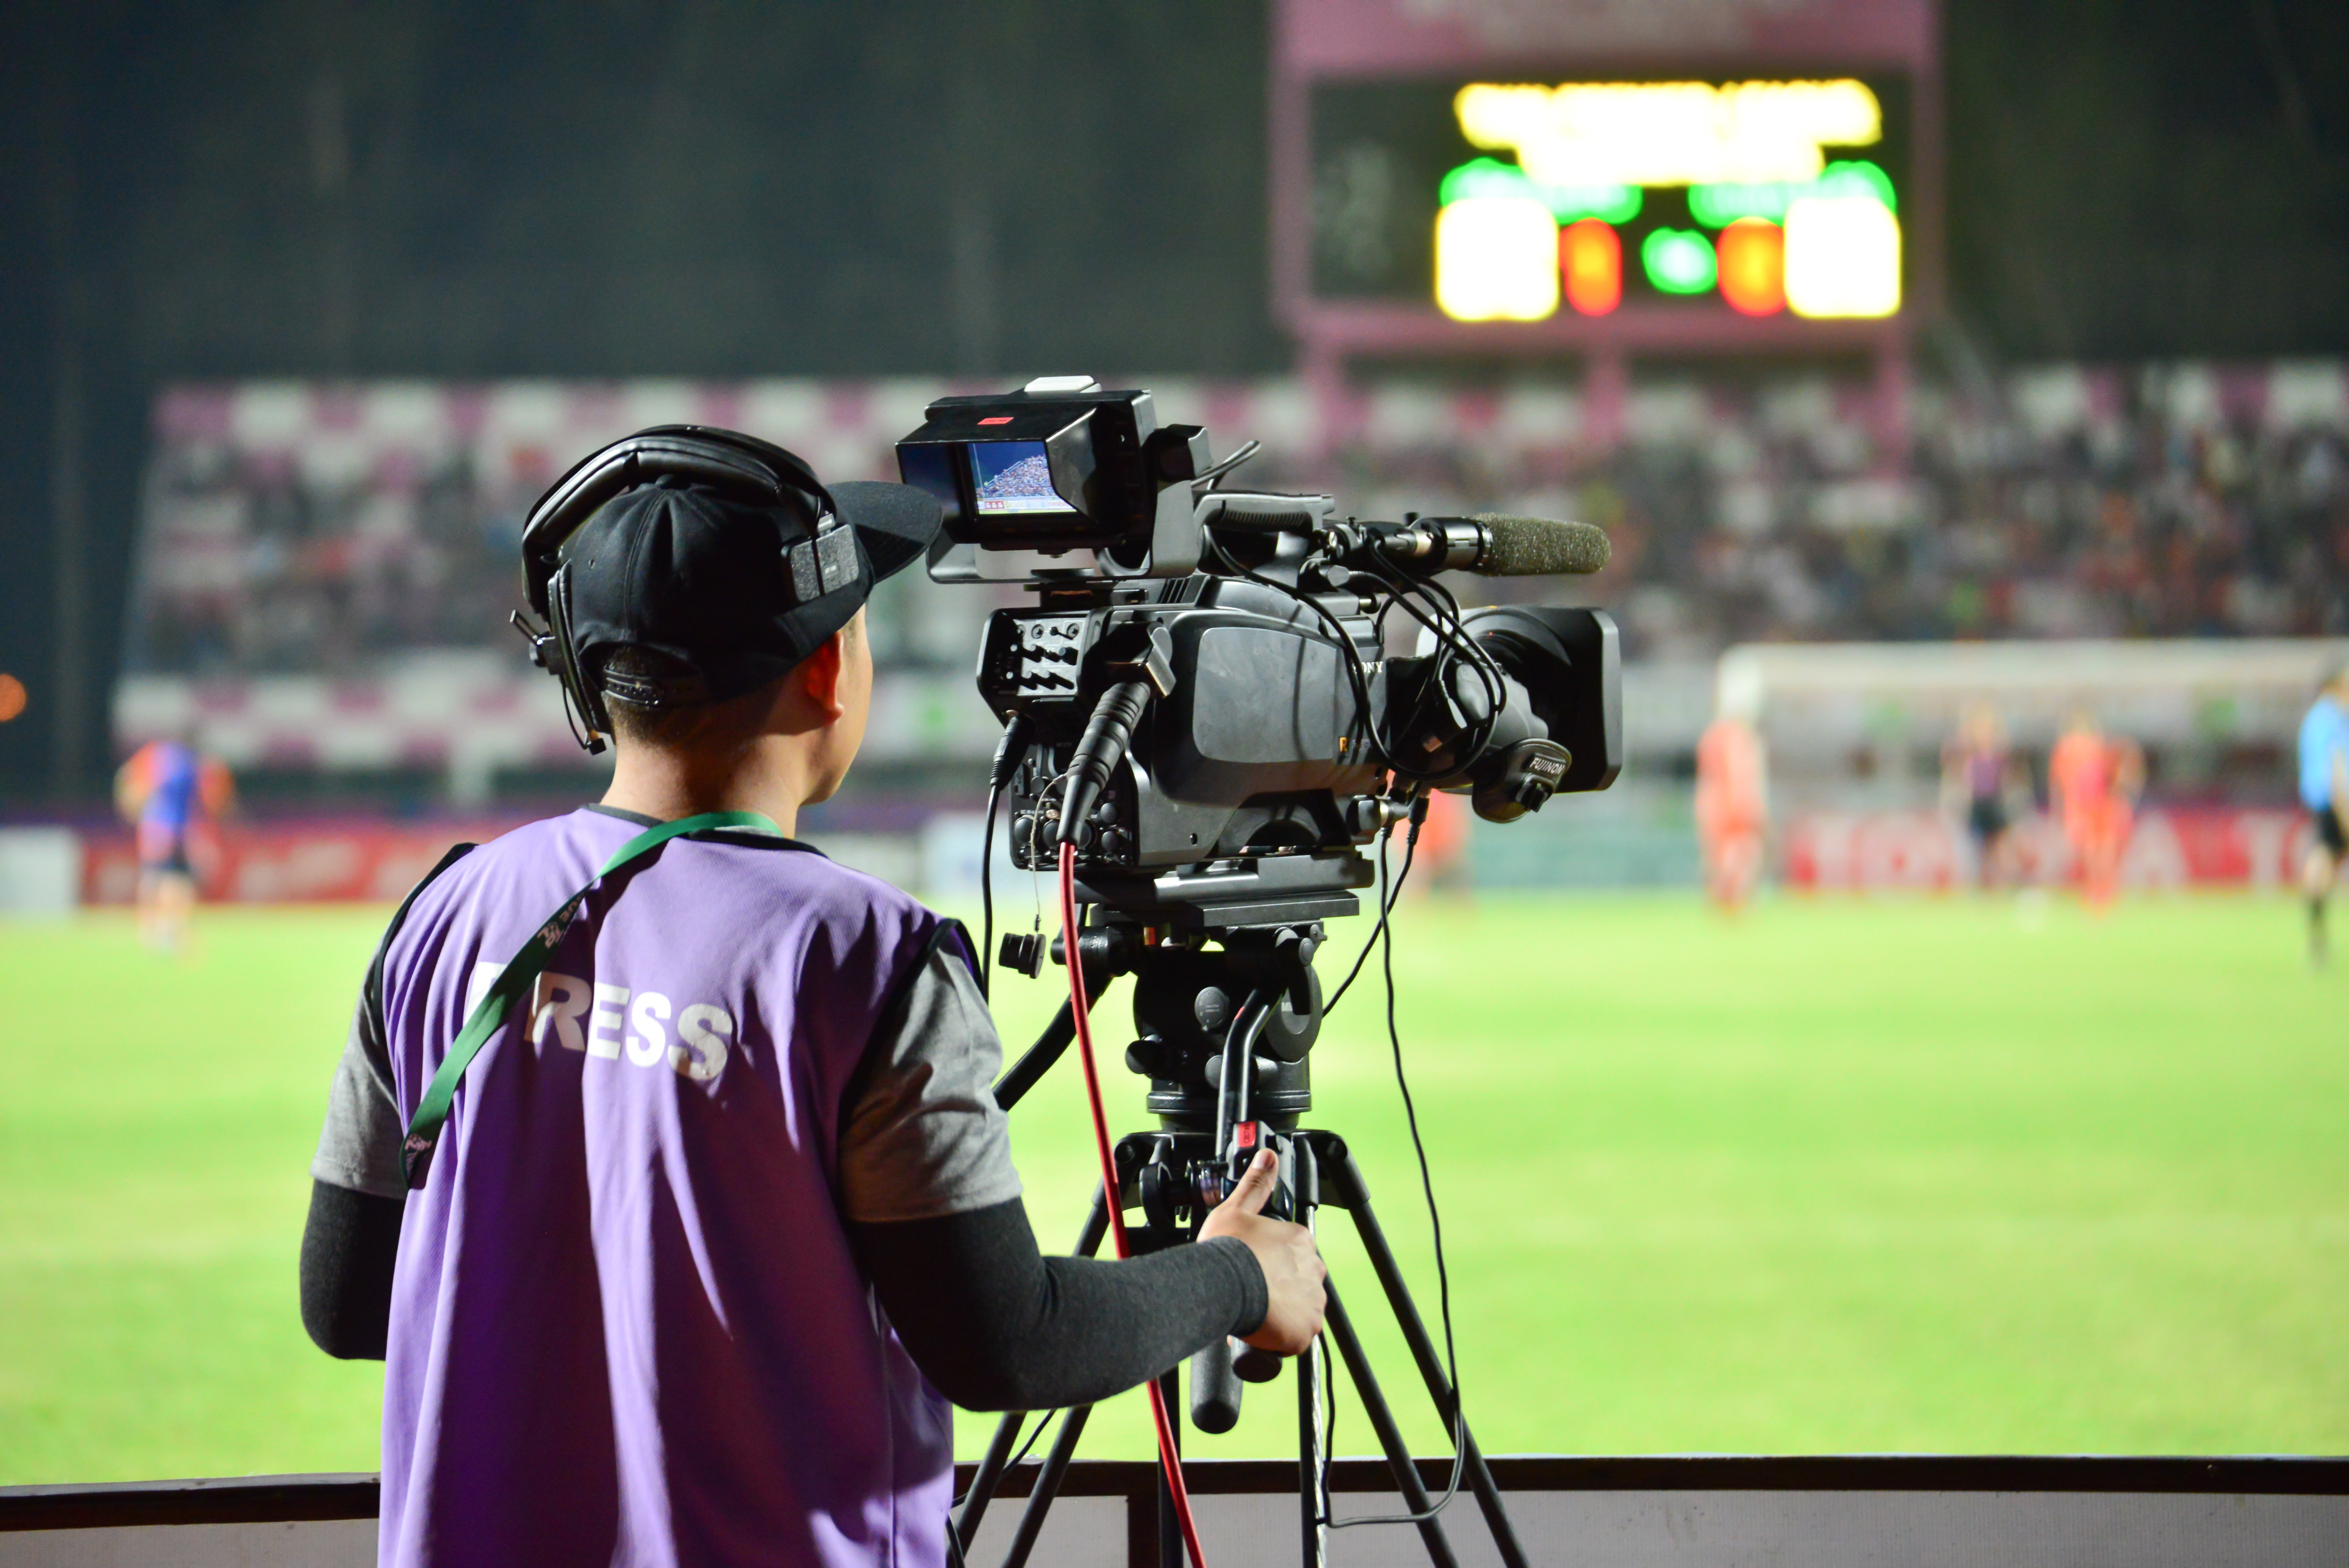 Спорт канал ютуб. Видеооператор футбол. Видеооператор на стадионе. Видеосъемка в спорте. Видеосъемка в футболе.